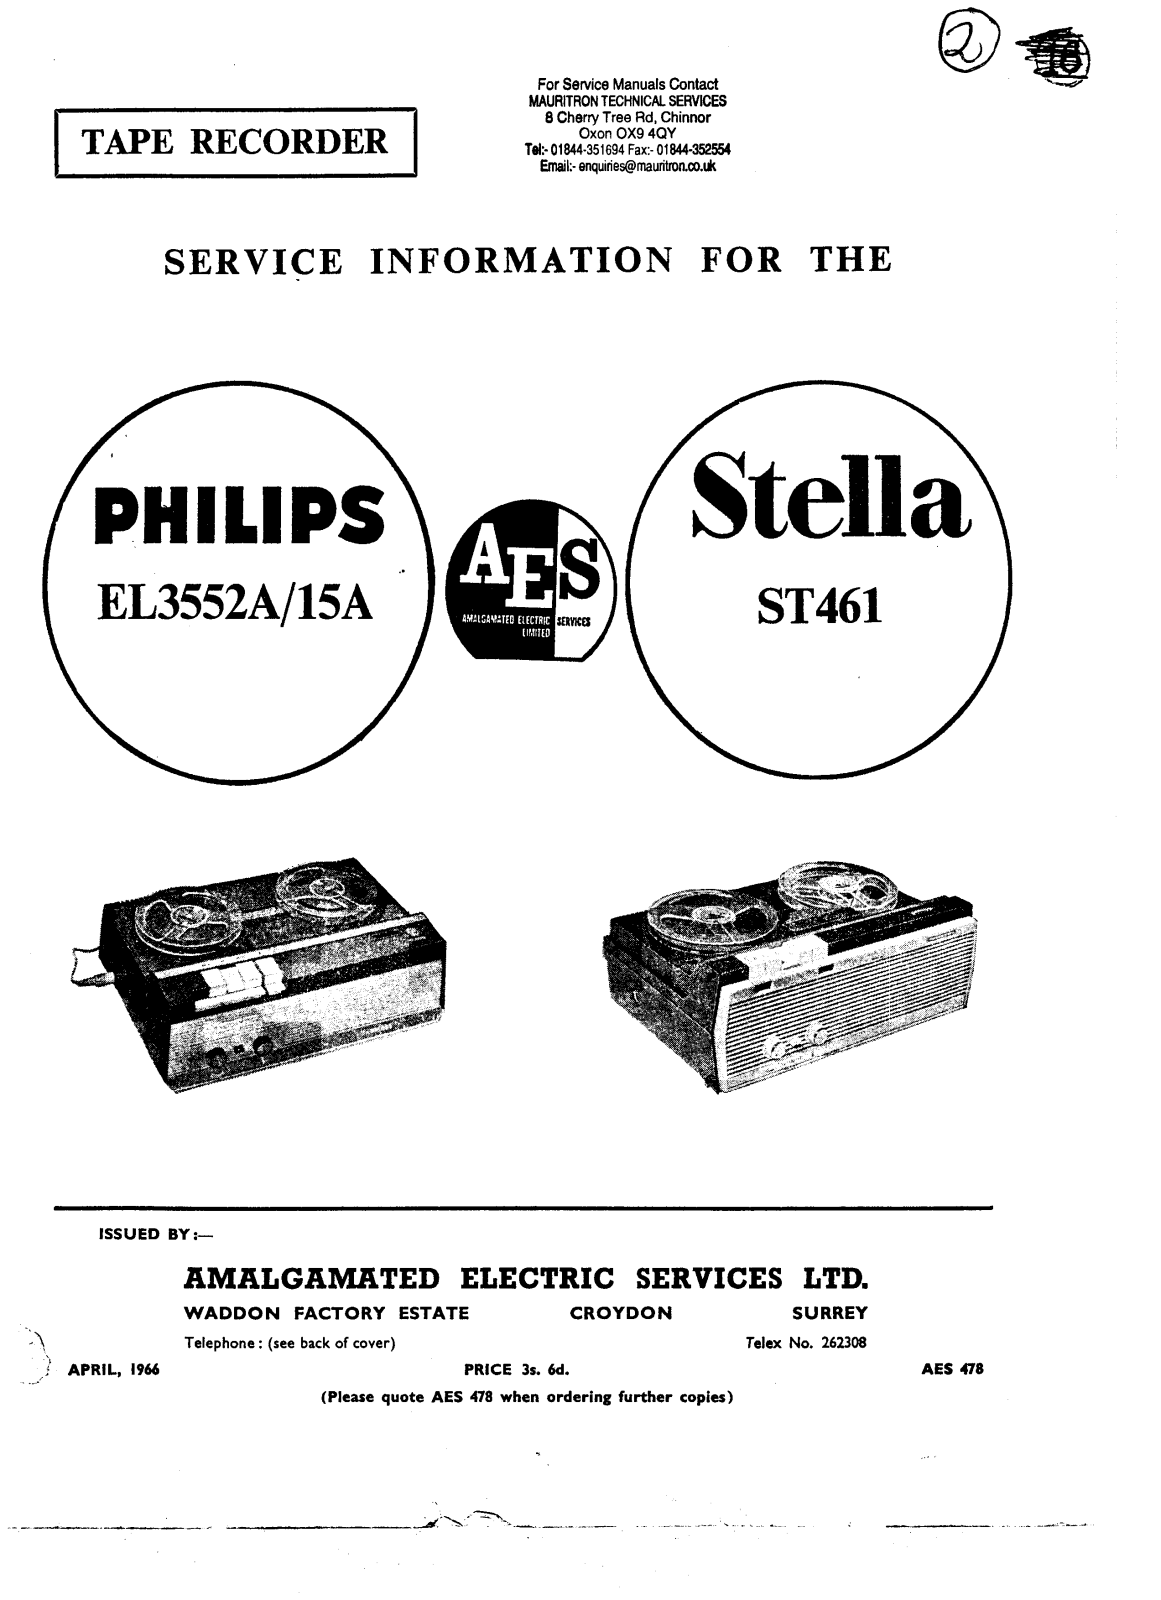 Philips EL-3515-A, EL-3552-A Service manual